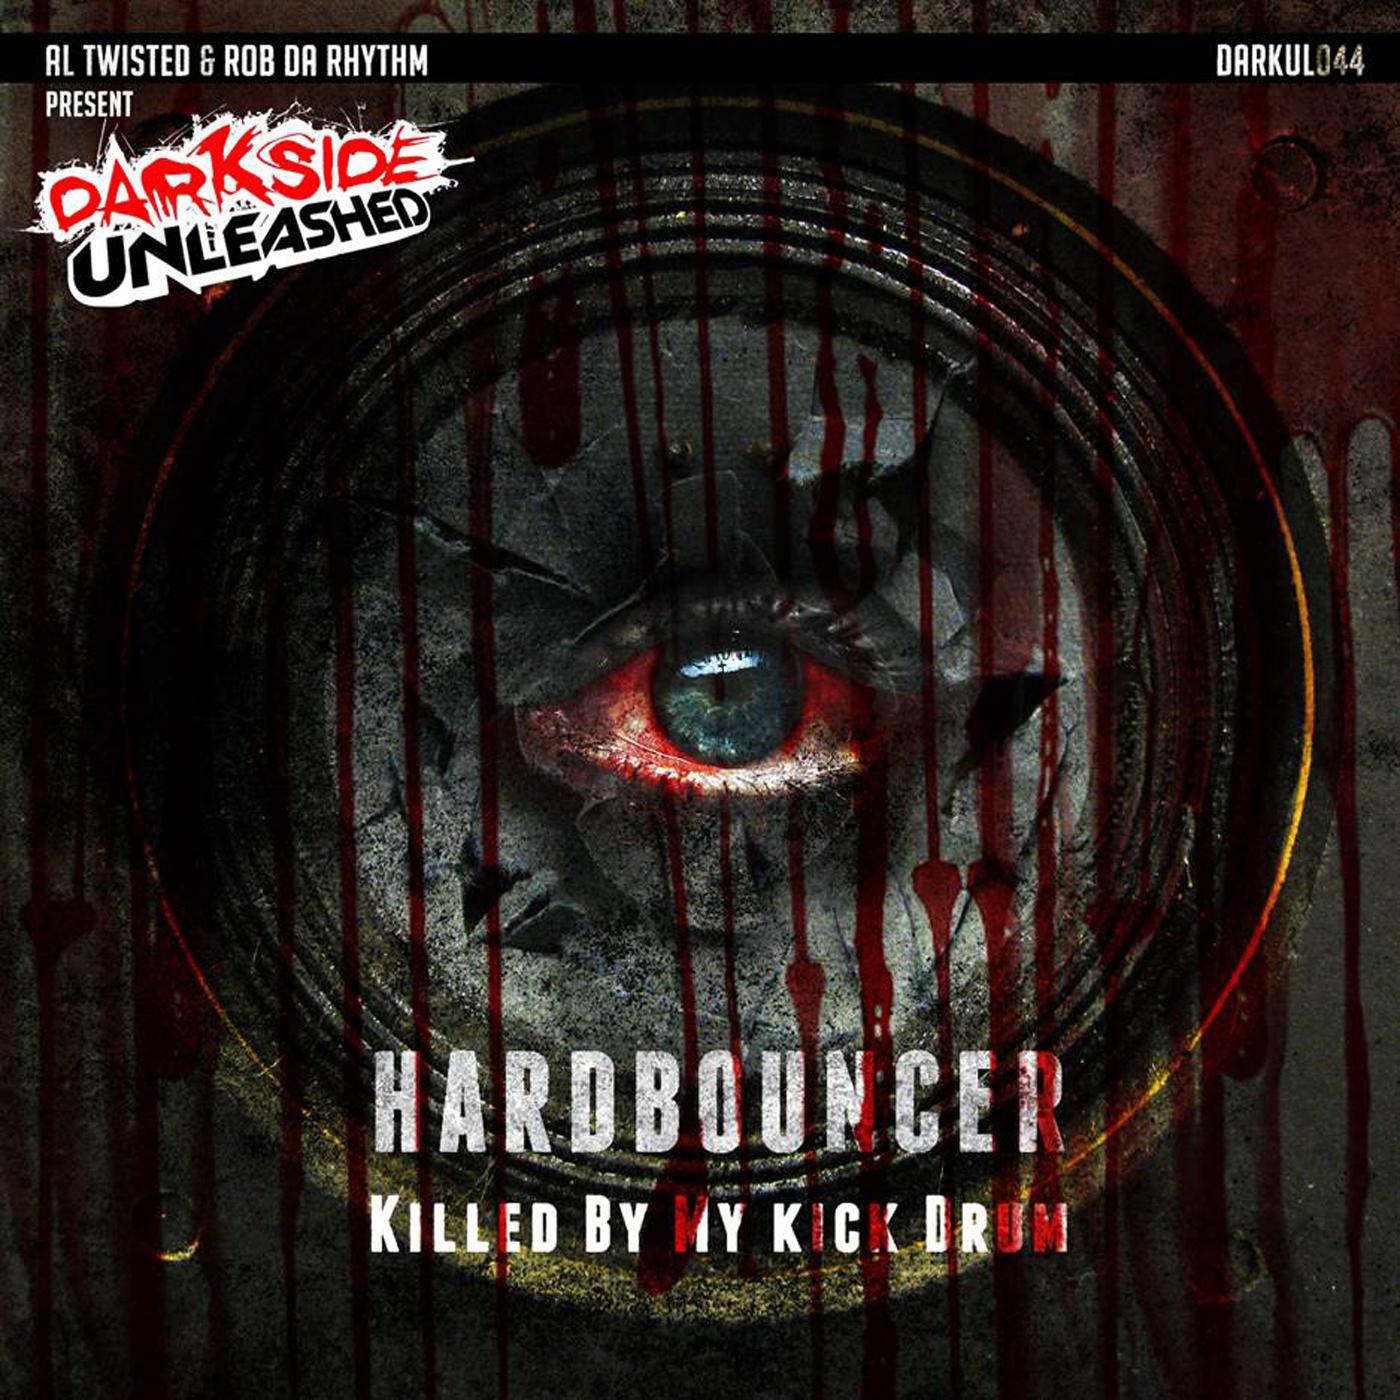 Hardbouncer - Atrocity (Original Mix)